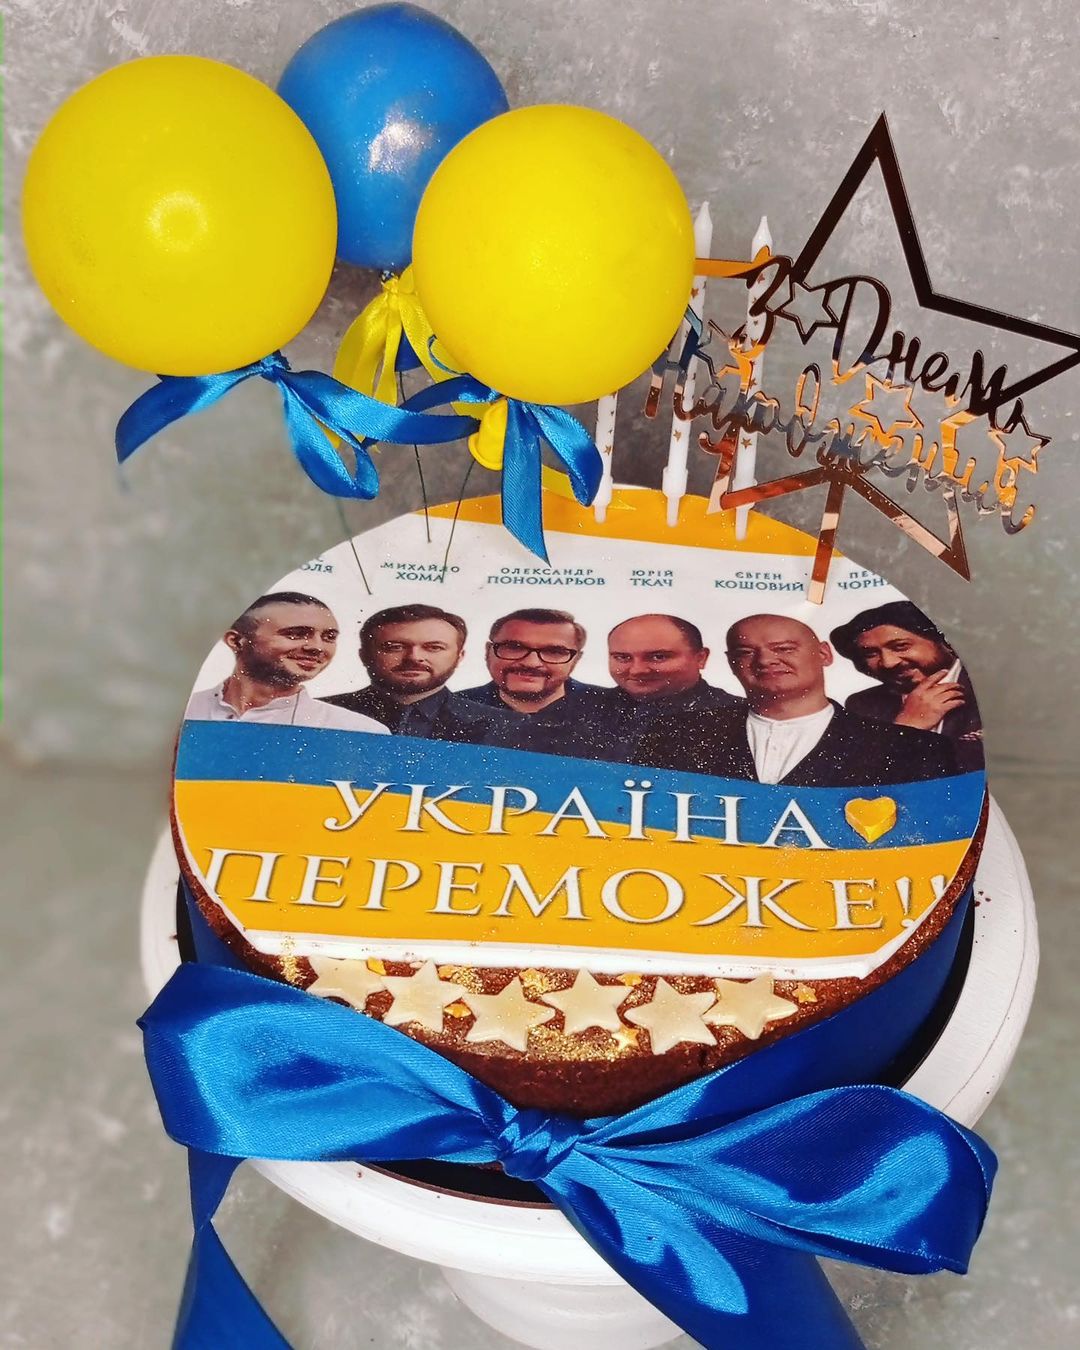 Патріотичний торт та ніжні привітання доньки: як Олександр Пономарьов відсвяткував день народження